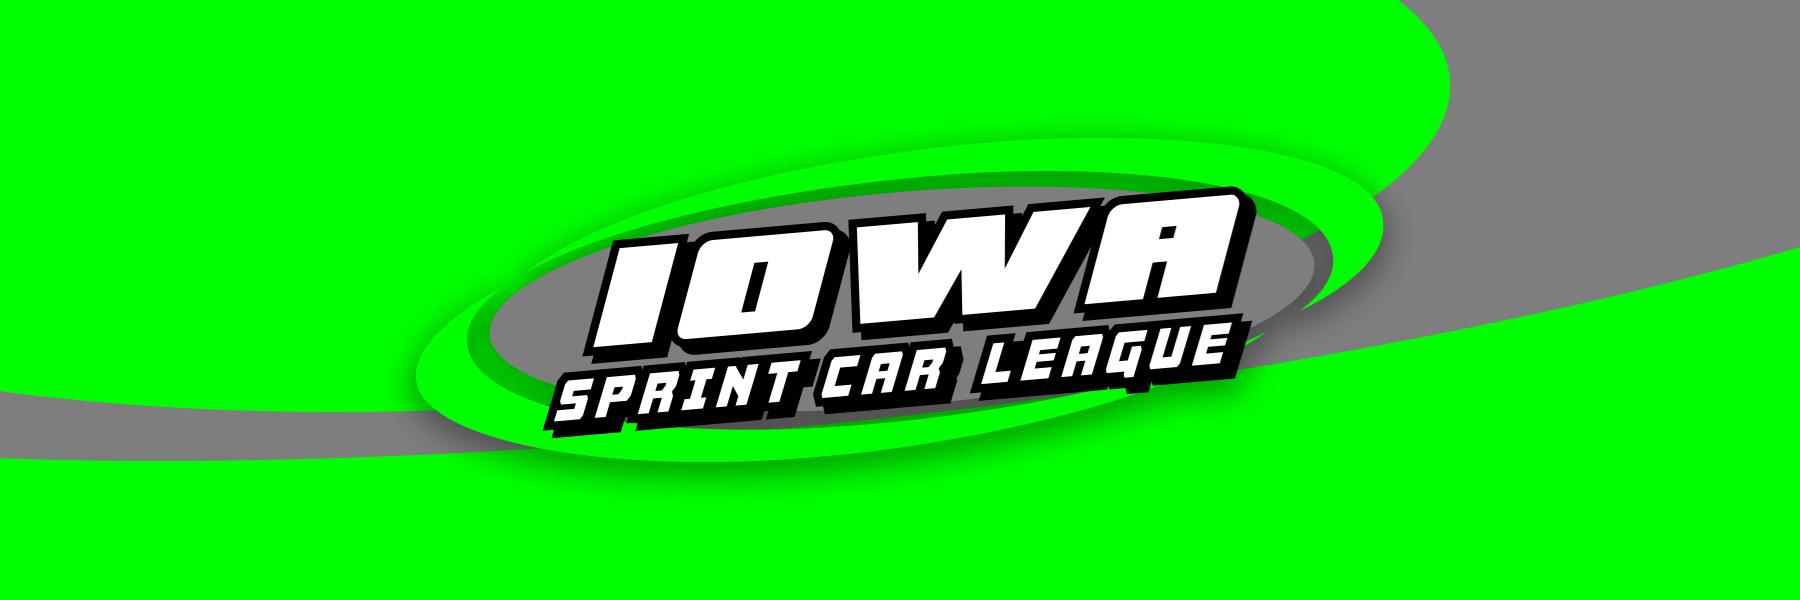 Iowa Sprint Car League